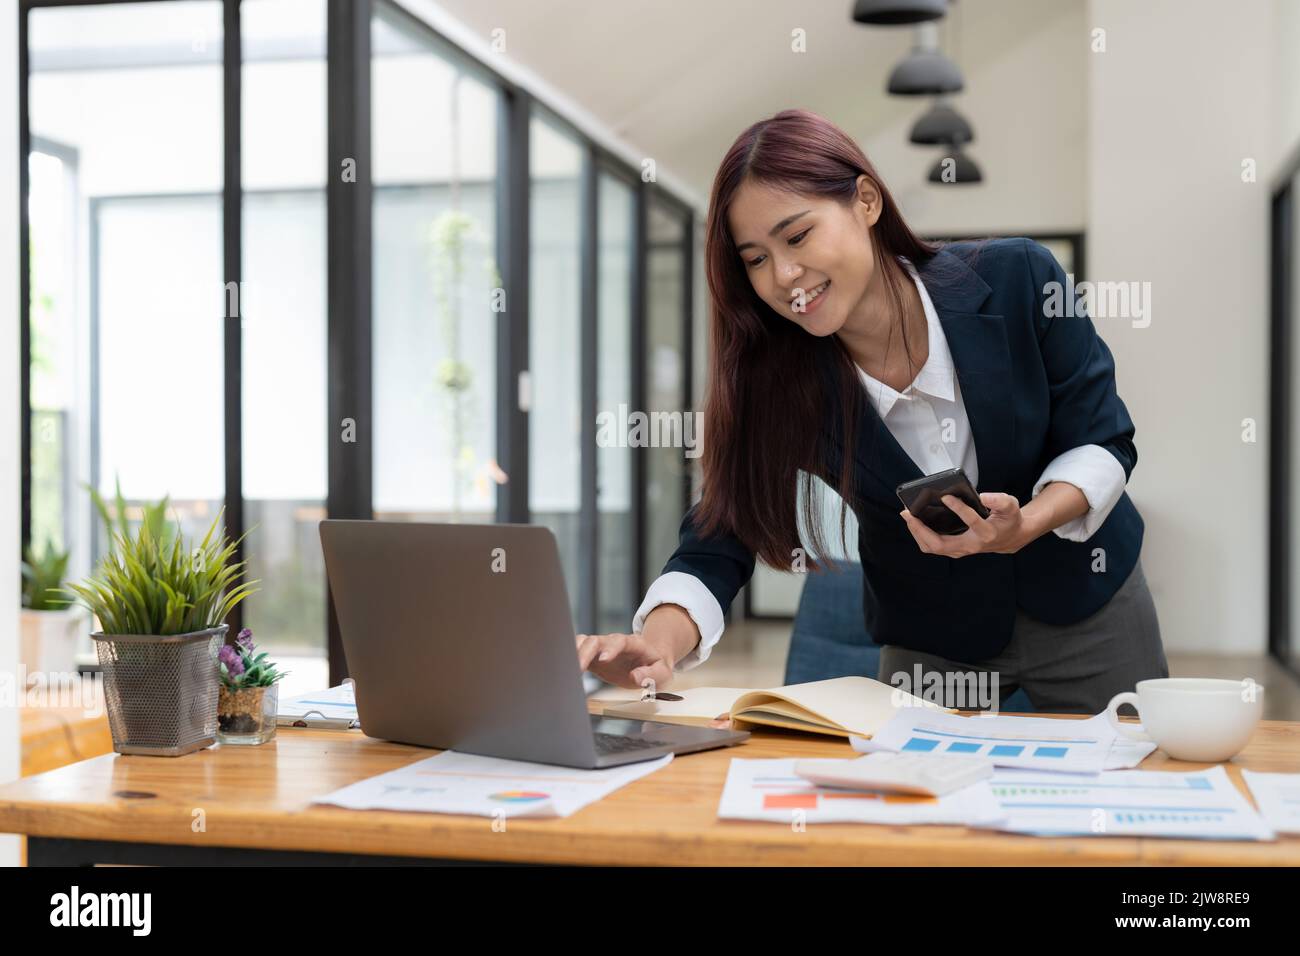 Femme d'affaires asiatique utilisant le téléphone mobile lors de la vérification d'un e-mail ou de médias sociaux sur Internet. Comptabilité concept financier. Banque D'Images